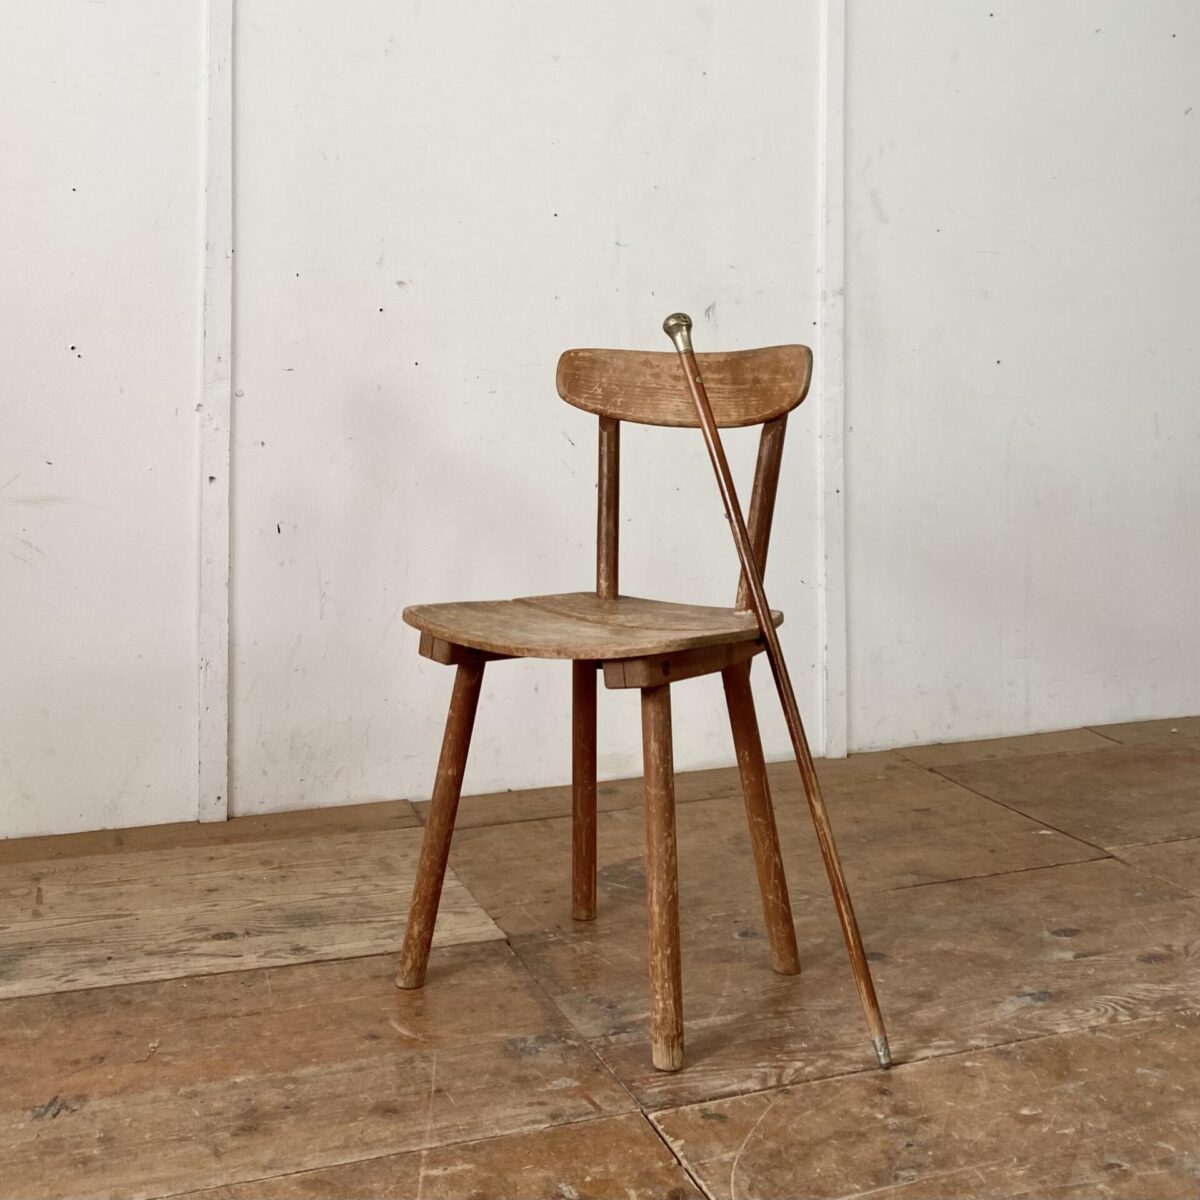 Deuxieme.shop swissdesign Jacob Müller Stuhl aus den 50er Jahren, für Wohnhilfe Zürich. Der Stuhl kann komplett auseinander genommen werden, Lehne und Stuhlbeine werden in die Leisten unter der Sitzfläche gesteckt, und mit Schlossschrauben geklemmt. Der Stuhl ist in verbrauchtem jedoch stabilen Zustand. 